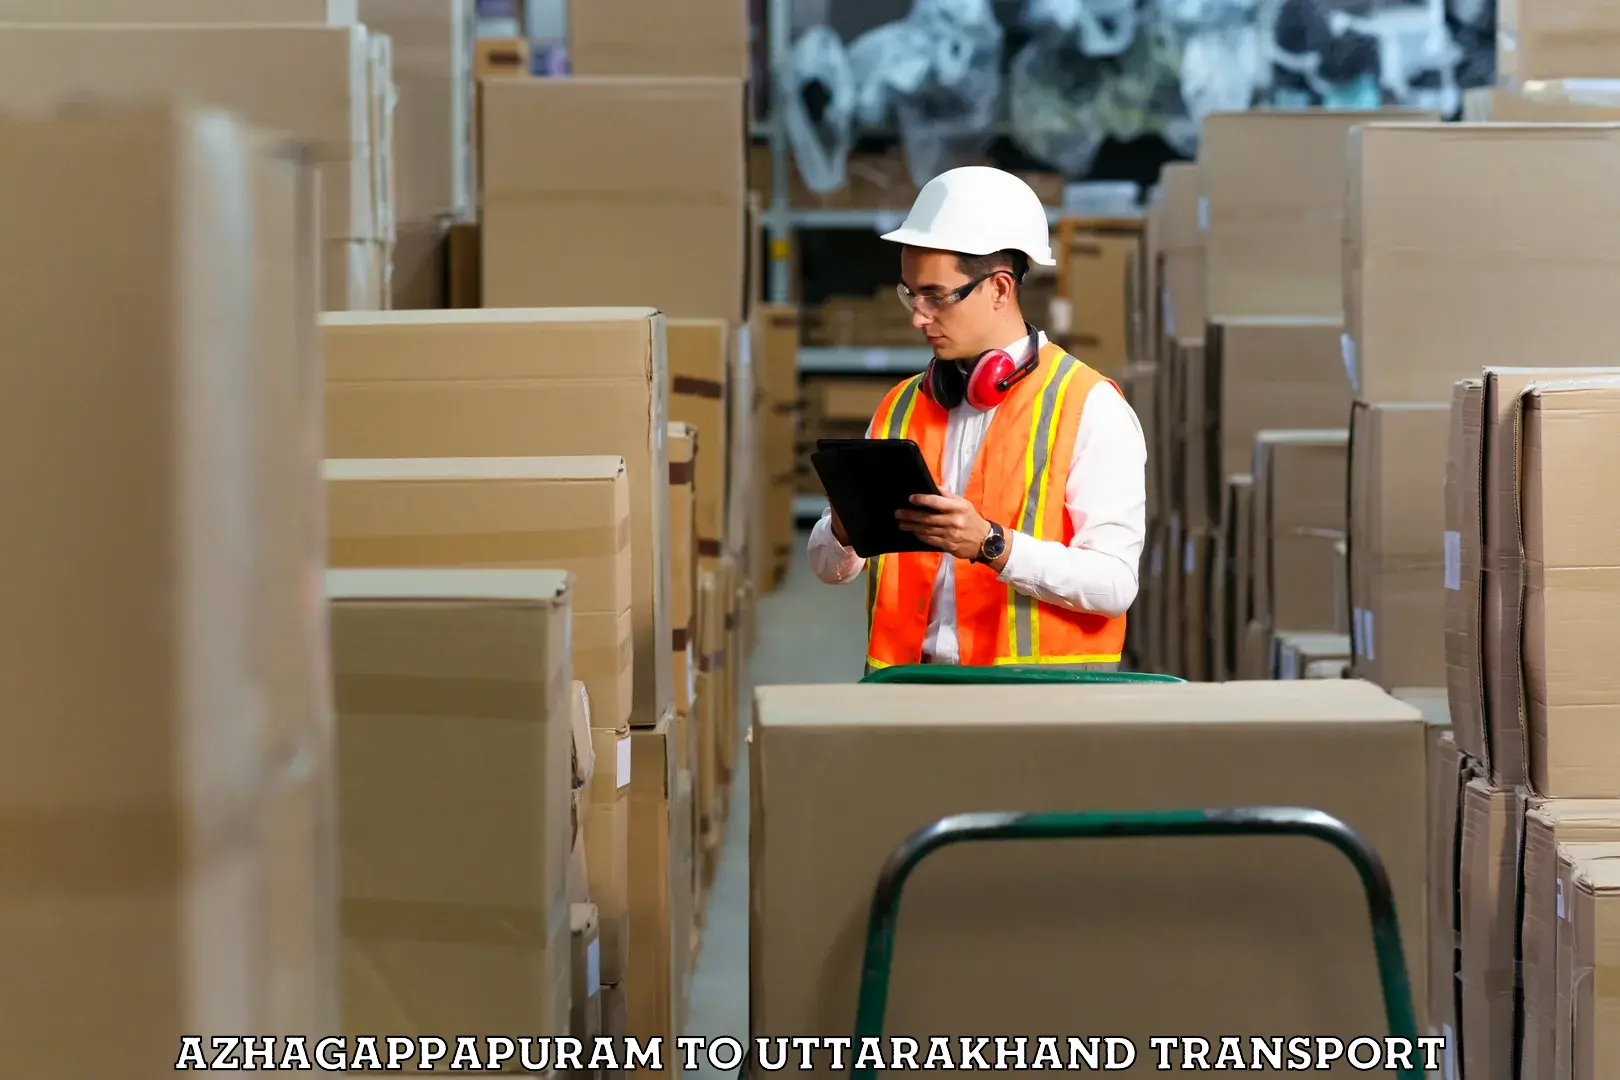 Furniture transport service Azhagappapuram to Kotdwara